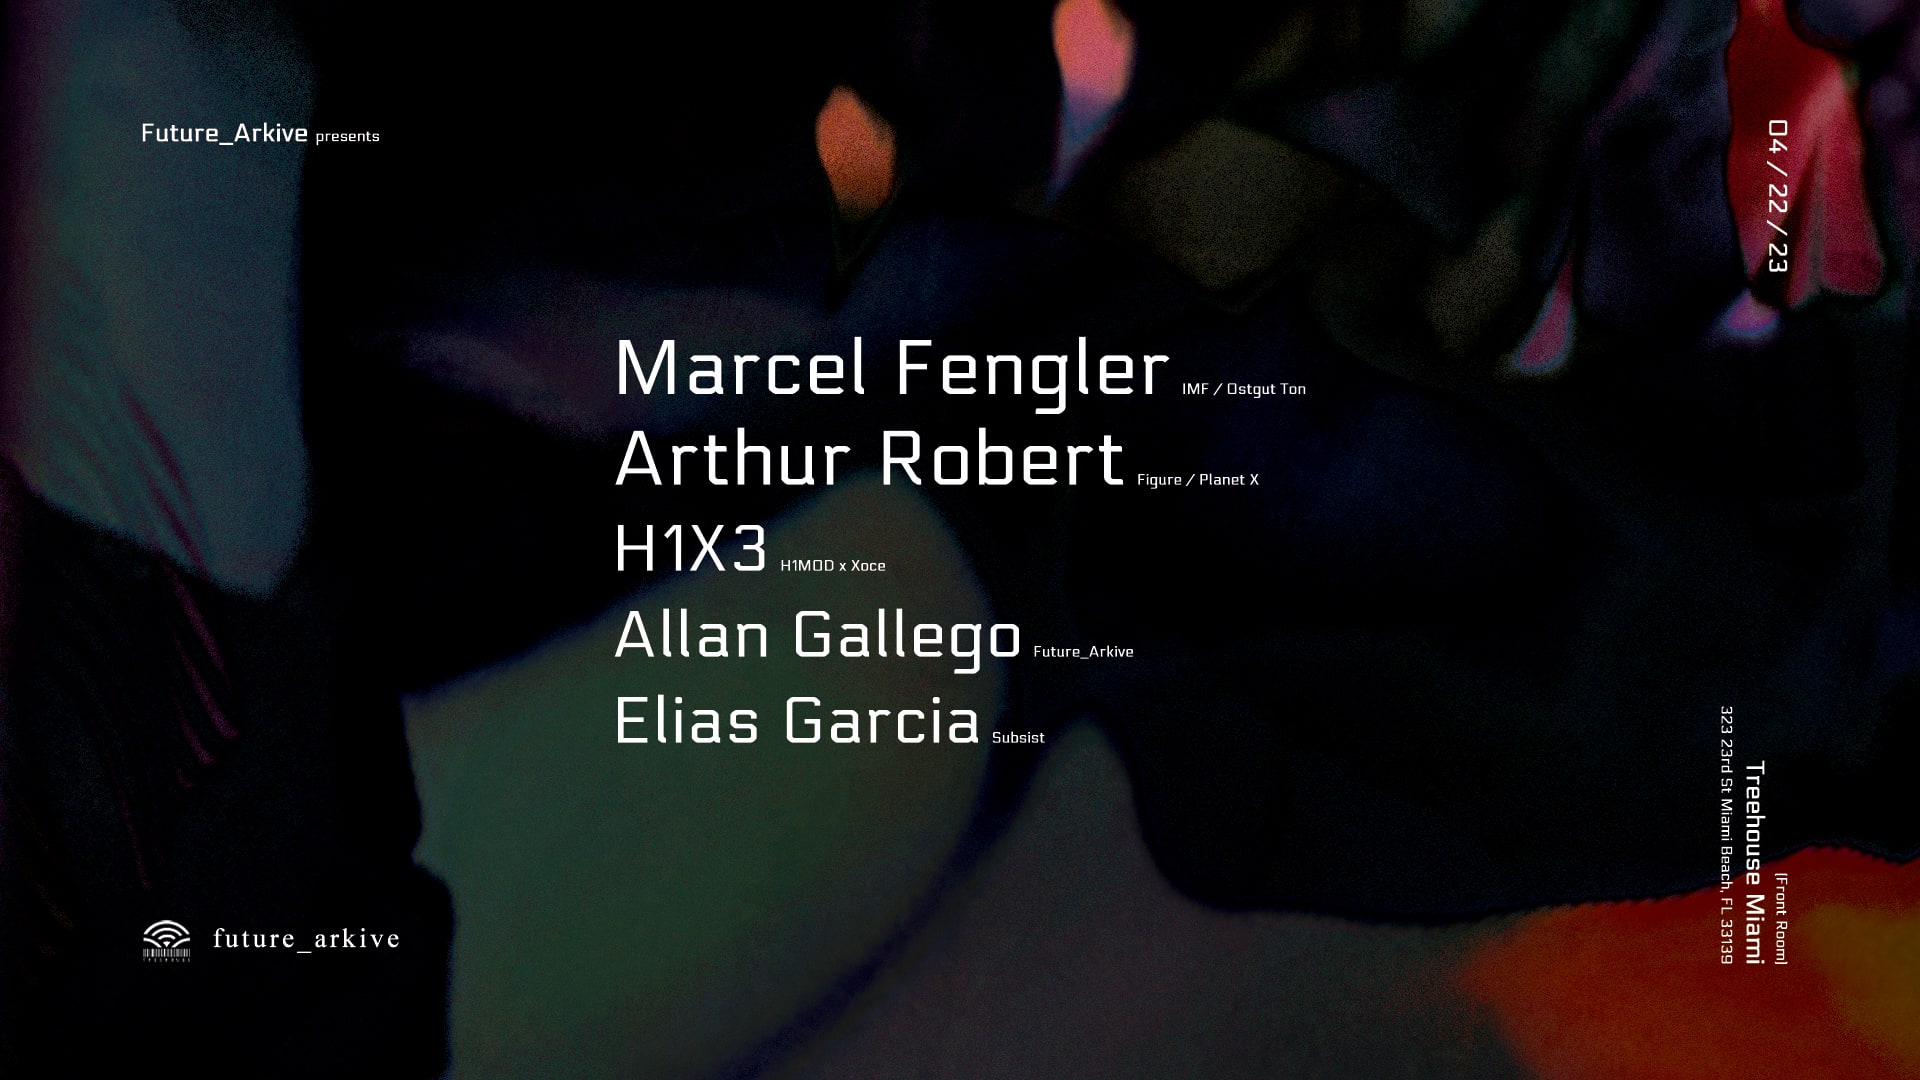 Marcel Fengler, Arthur Robert by Future_Arkive